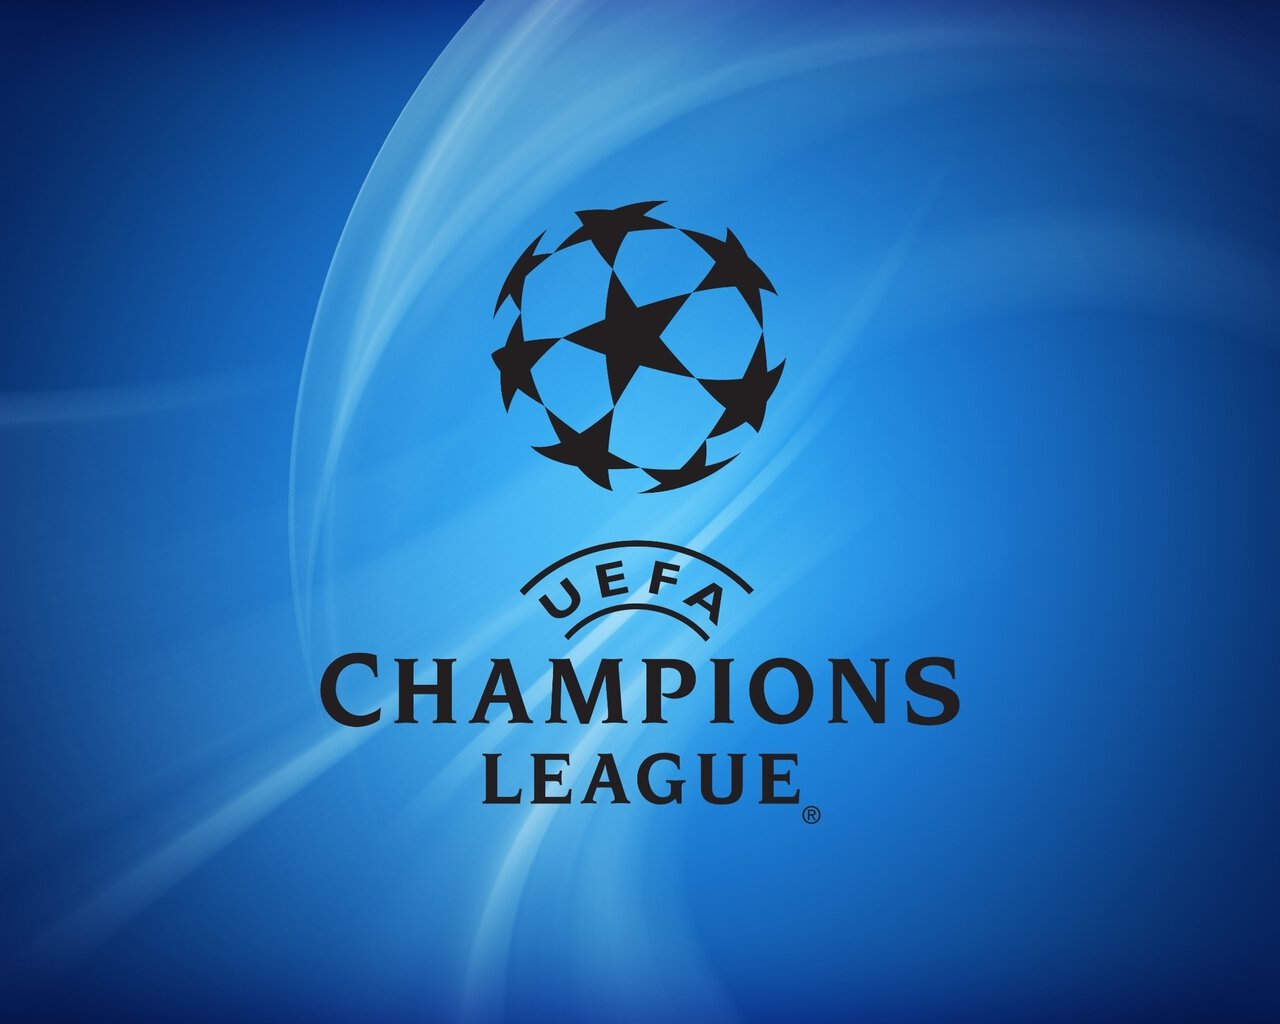 Лига чемпионов стартует! Милан играет с Ньюкаслом, Барса примет Антверпен, Ман Сити  Црвену Звезду, ПСЖ против Боруссии